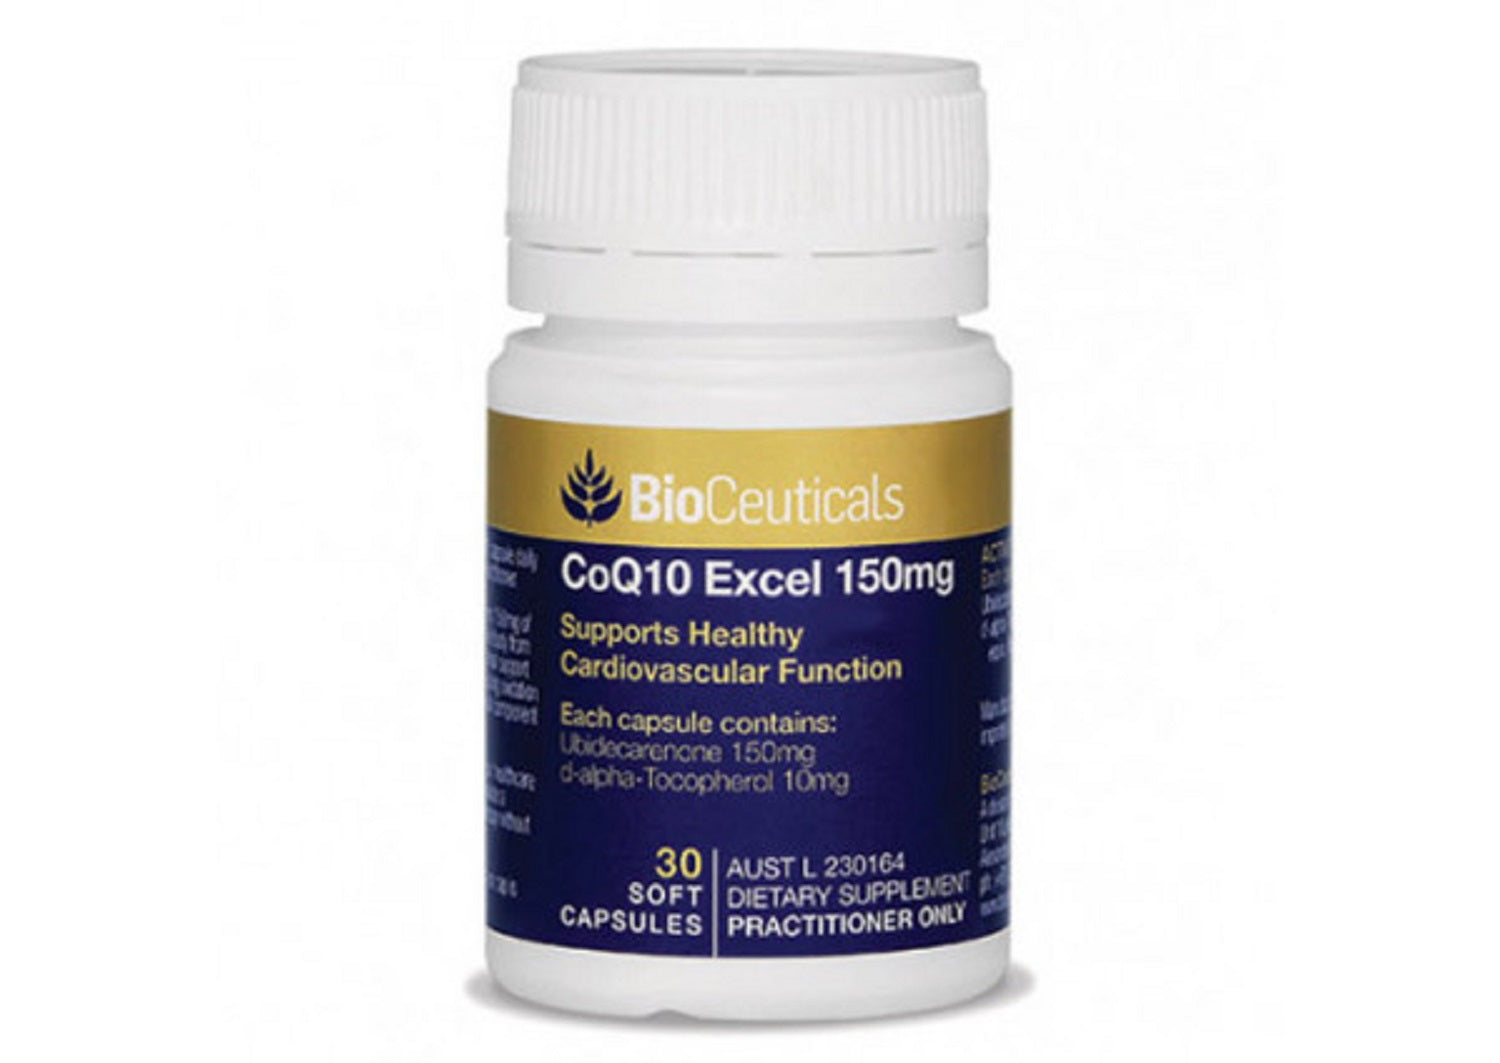 BioCeuticals CoQ10 Excel 150mg 30 soft capsules